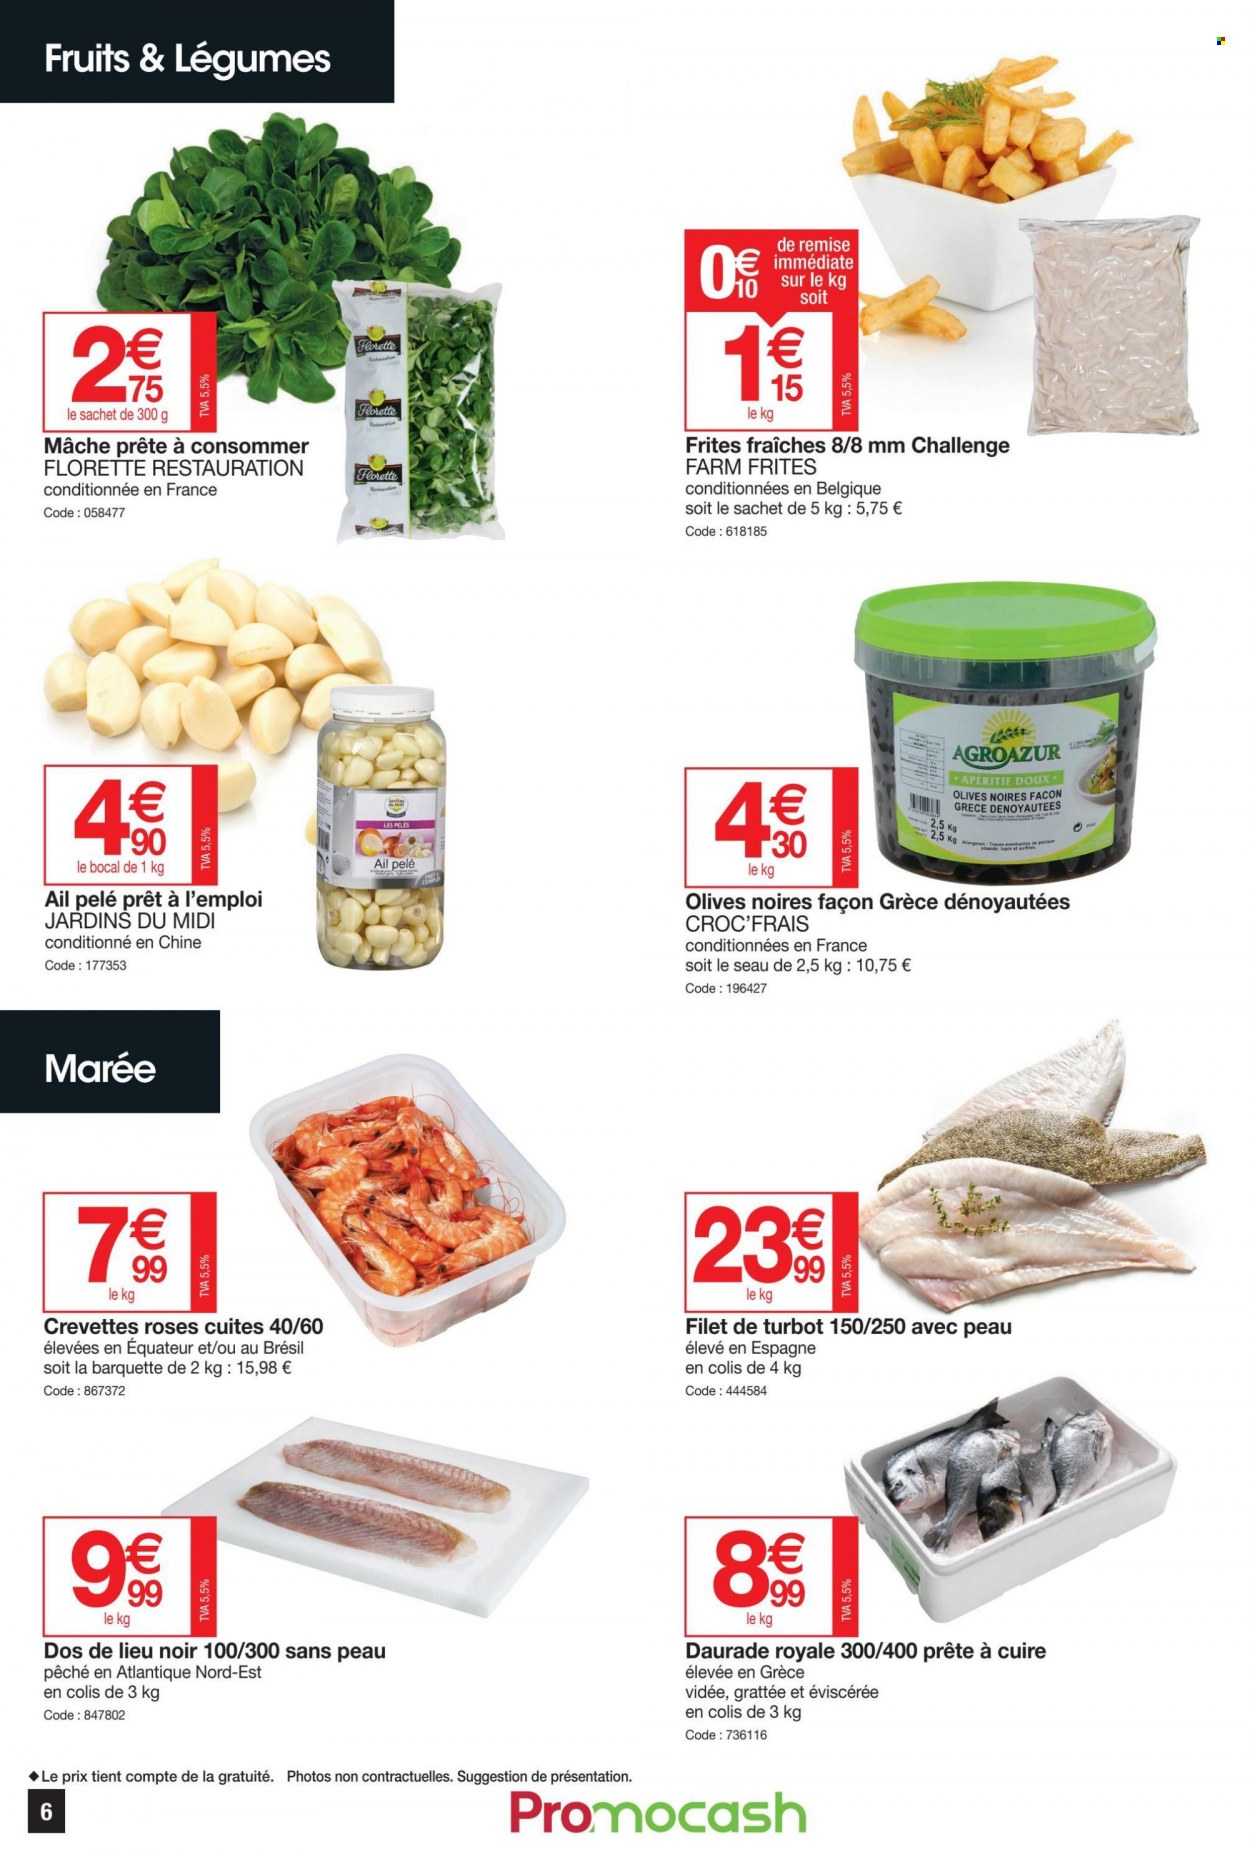 thumbnail - Catalogue Promocash - 07/07/2022 - 16/07/2022 - Produits soldés - ail, mâche, crevettes, dorade, filet de lieu, frites, olives, olives noires, apéritif. Page 6.